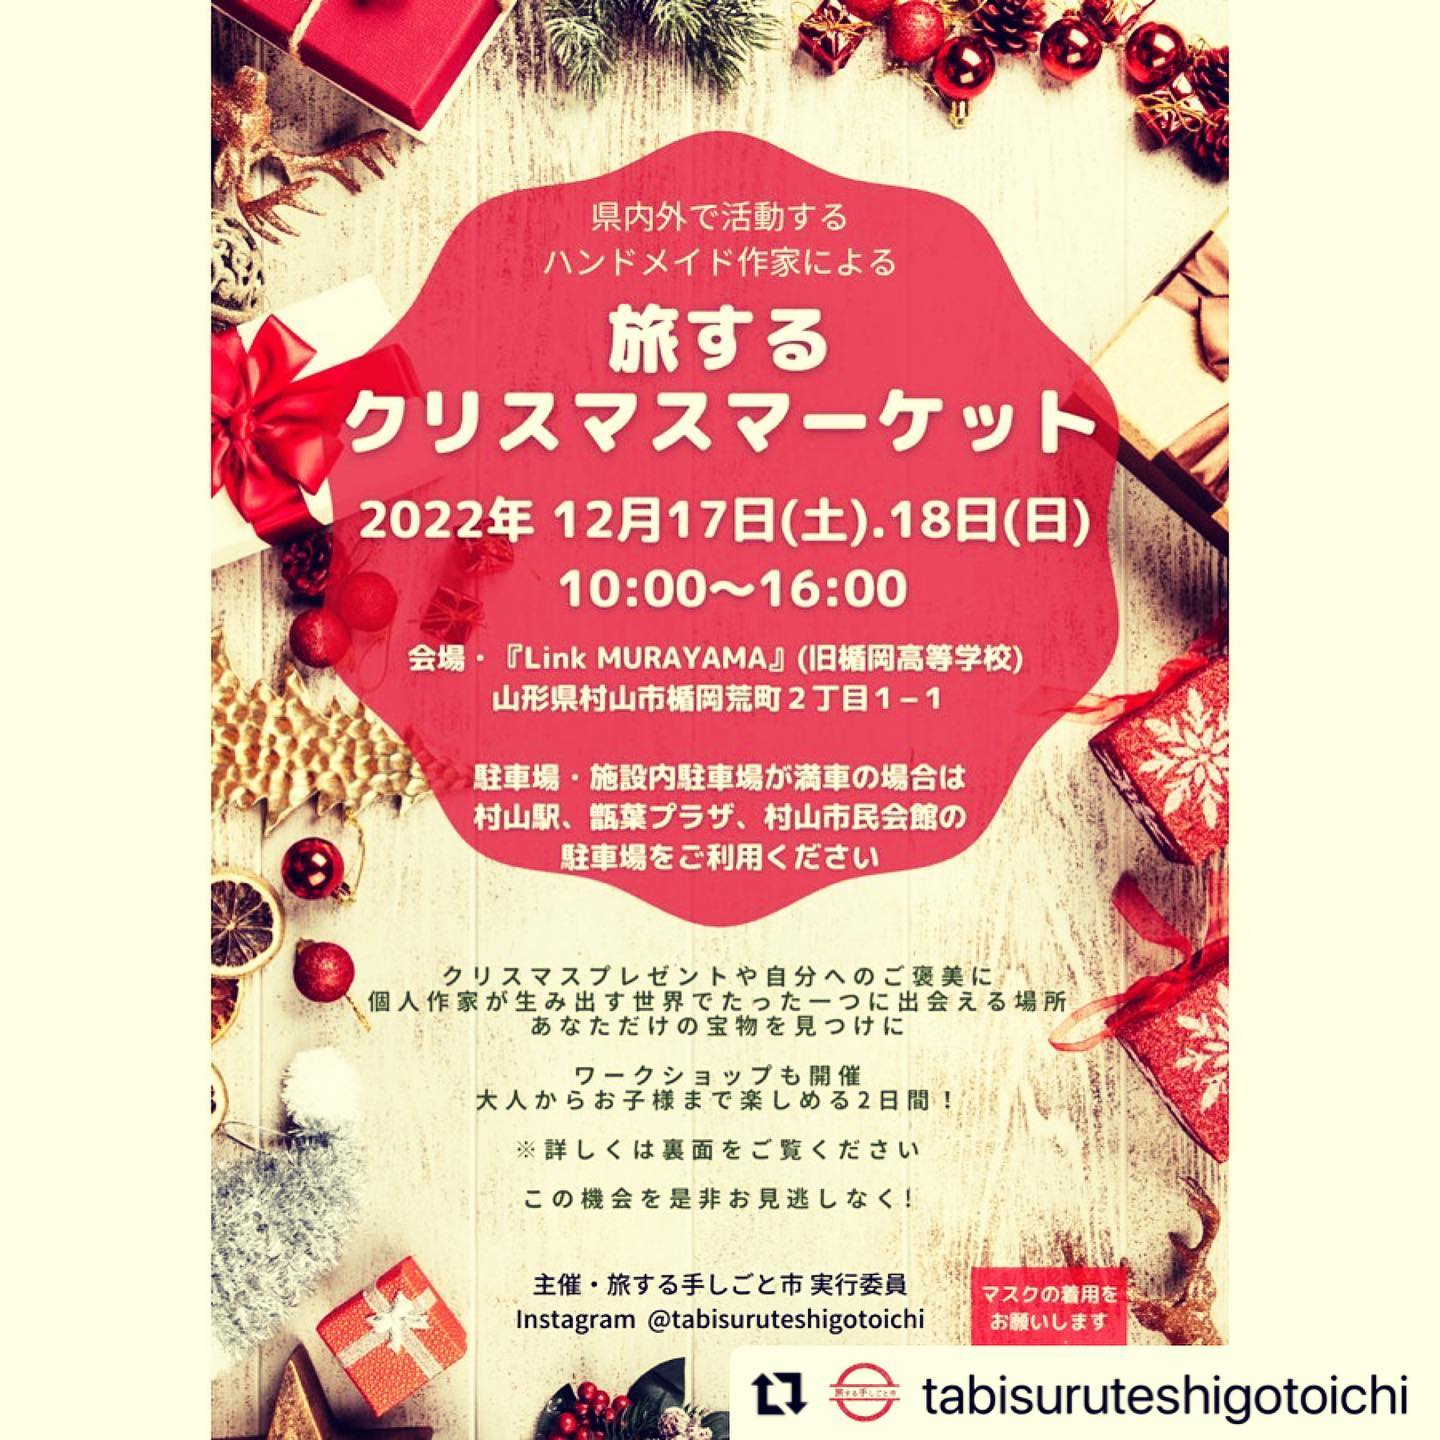 【山形イベント情報】12/17~18 旅するクリスマスマーケットが開催されます。（村山市）